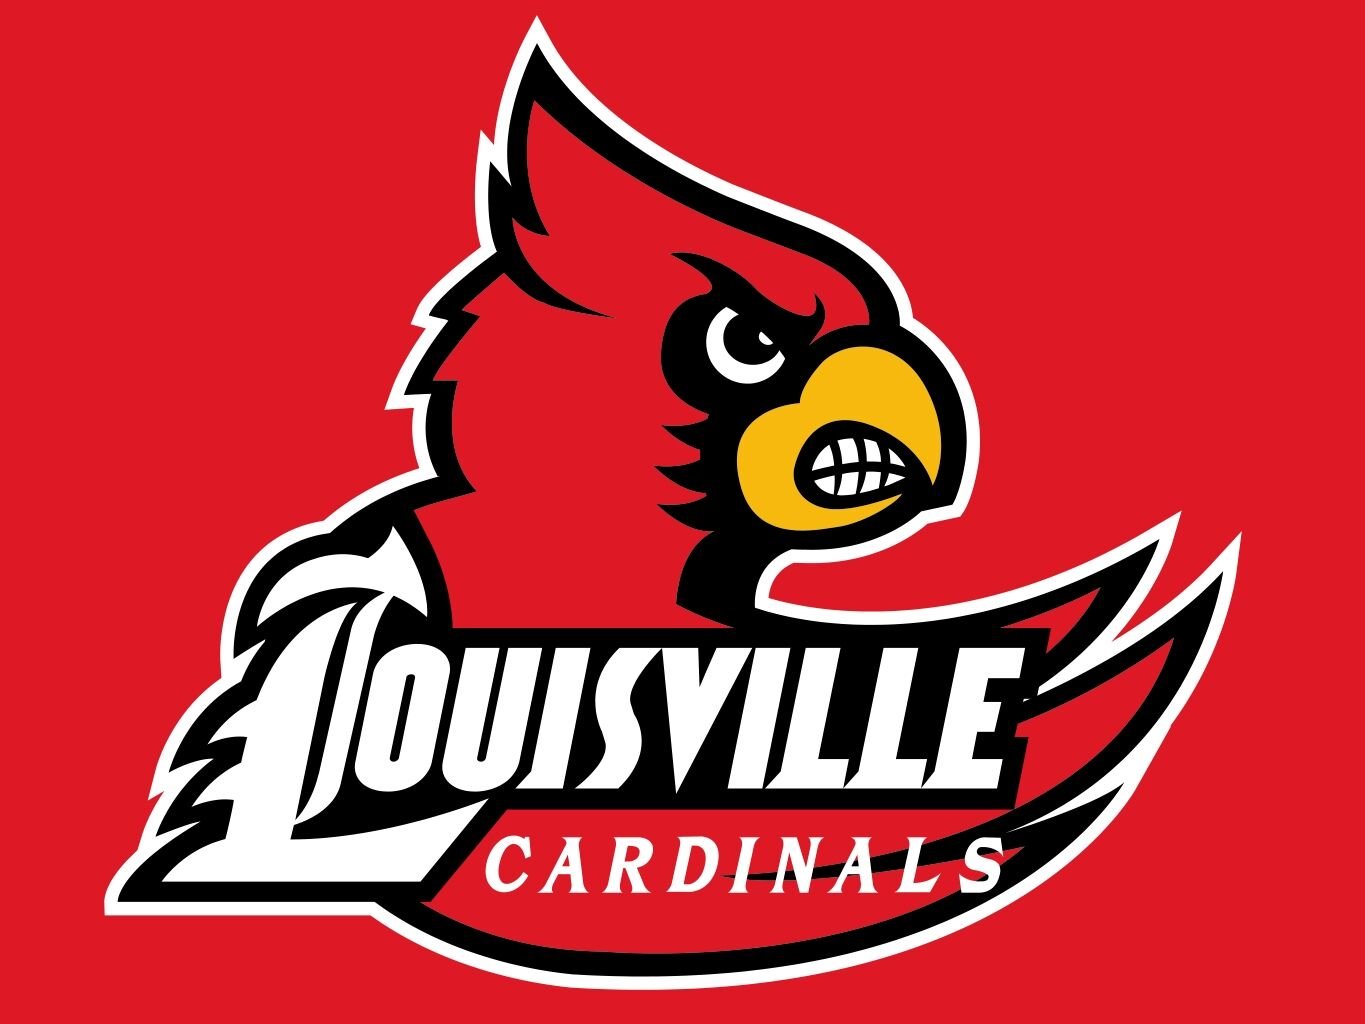 Louisville baseball: Cardinals coach Dan McDonnell gets new contract